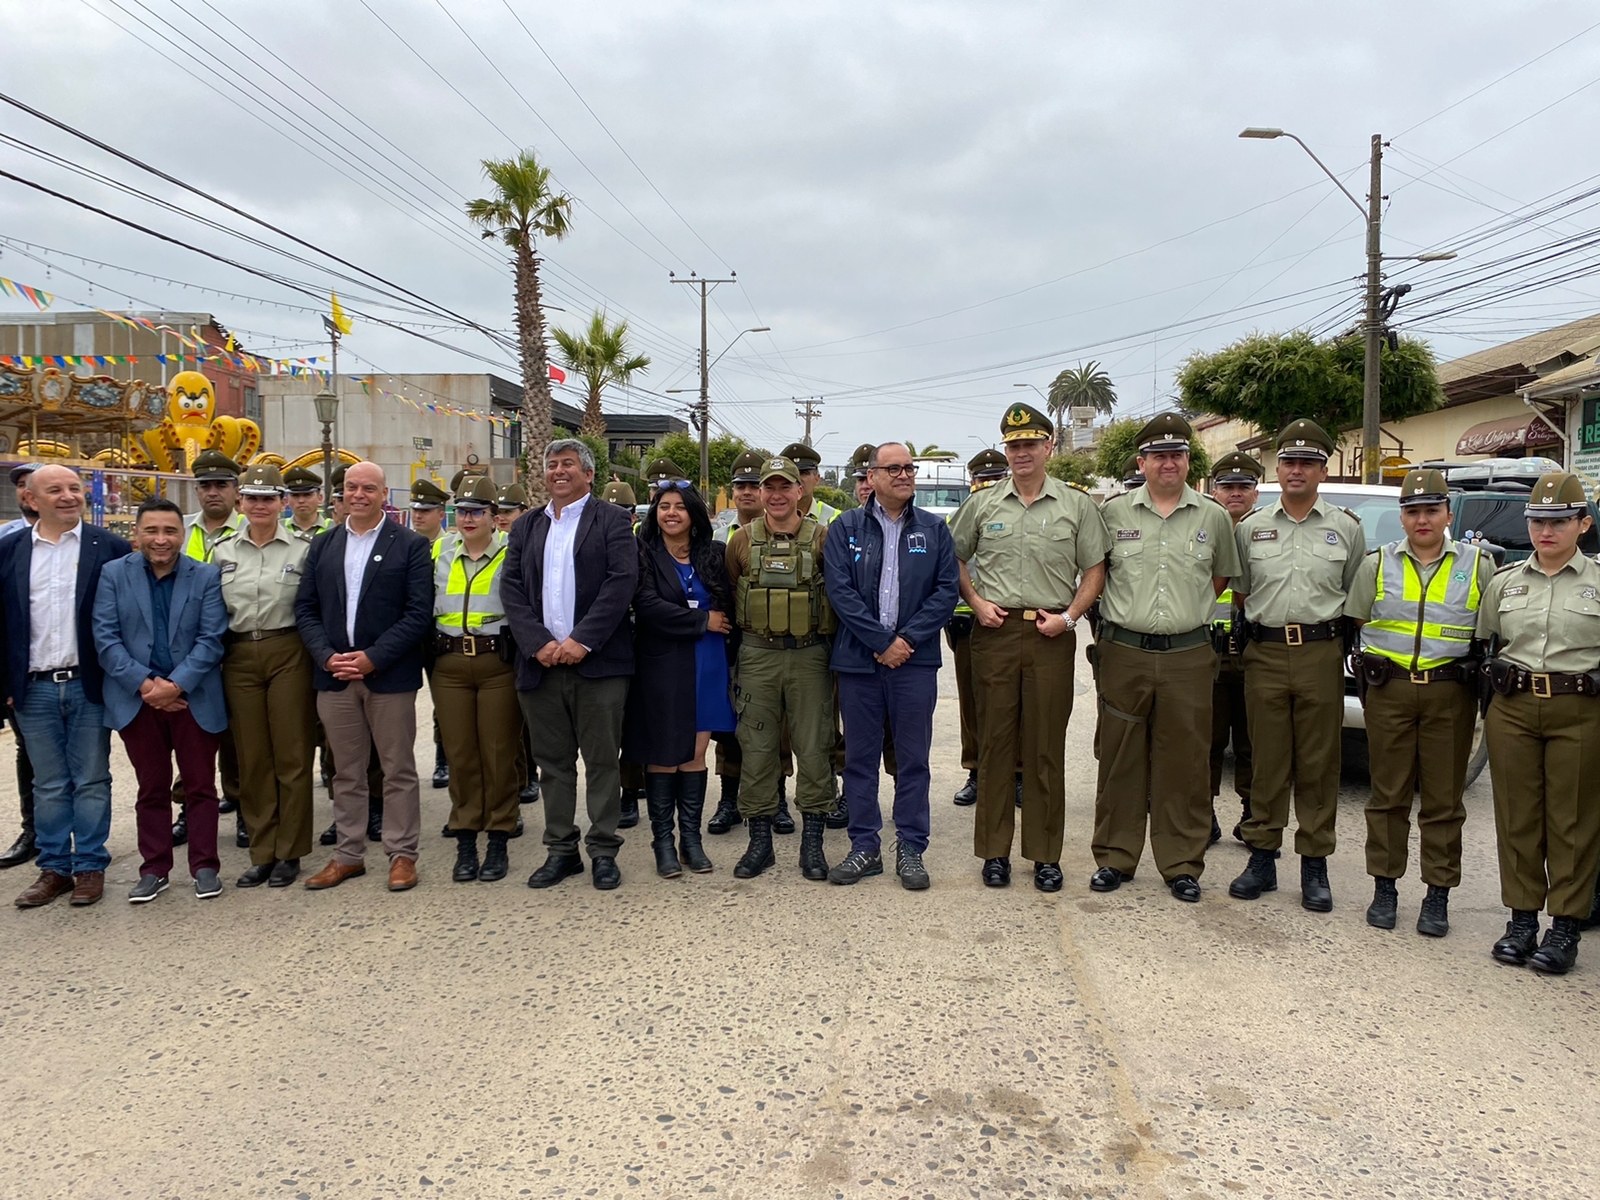 Autoridades Regionales lanzan Plan Verano Seguro en Pichilemu, que aumentará contingente policial en O´Higgins para la seguridad de veraneantes